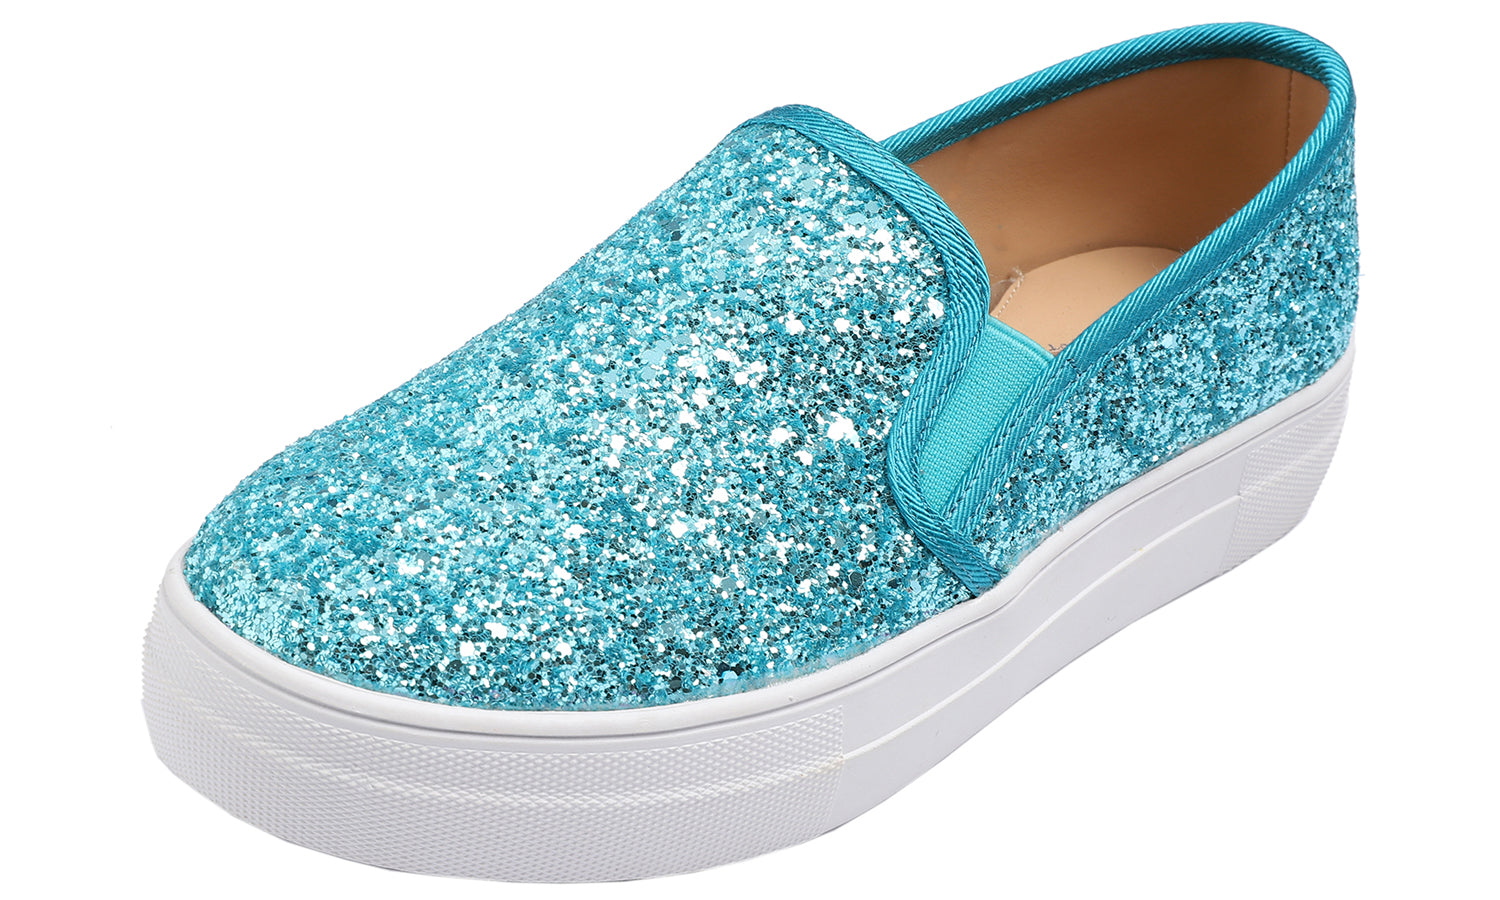 Feversole Women's Glitter Turquoise Platform Slip On Sneaker Casual Flat Loafers